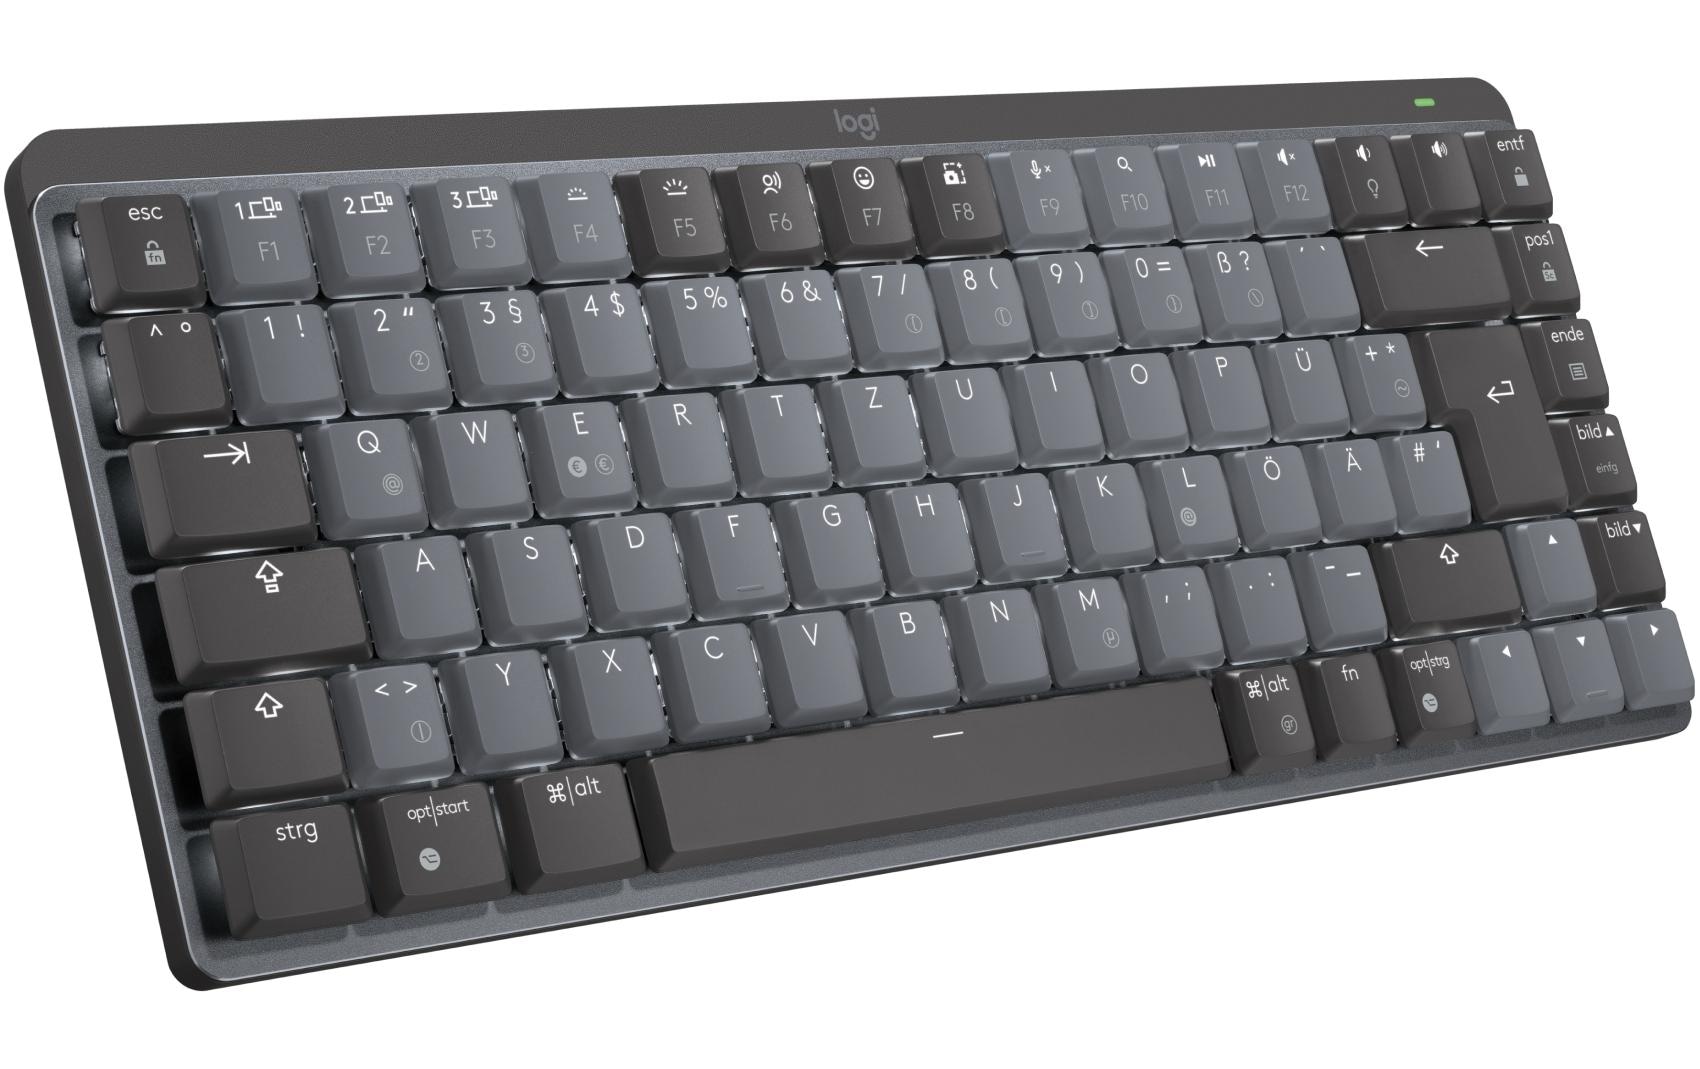 Logitech Wireless-Tastatur »MX Mechanical Mini«